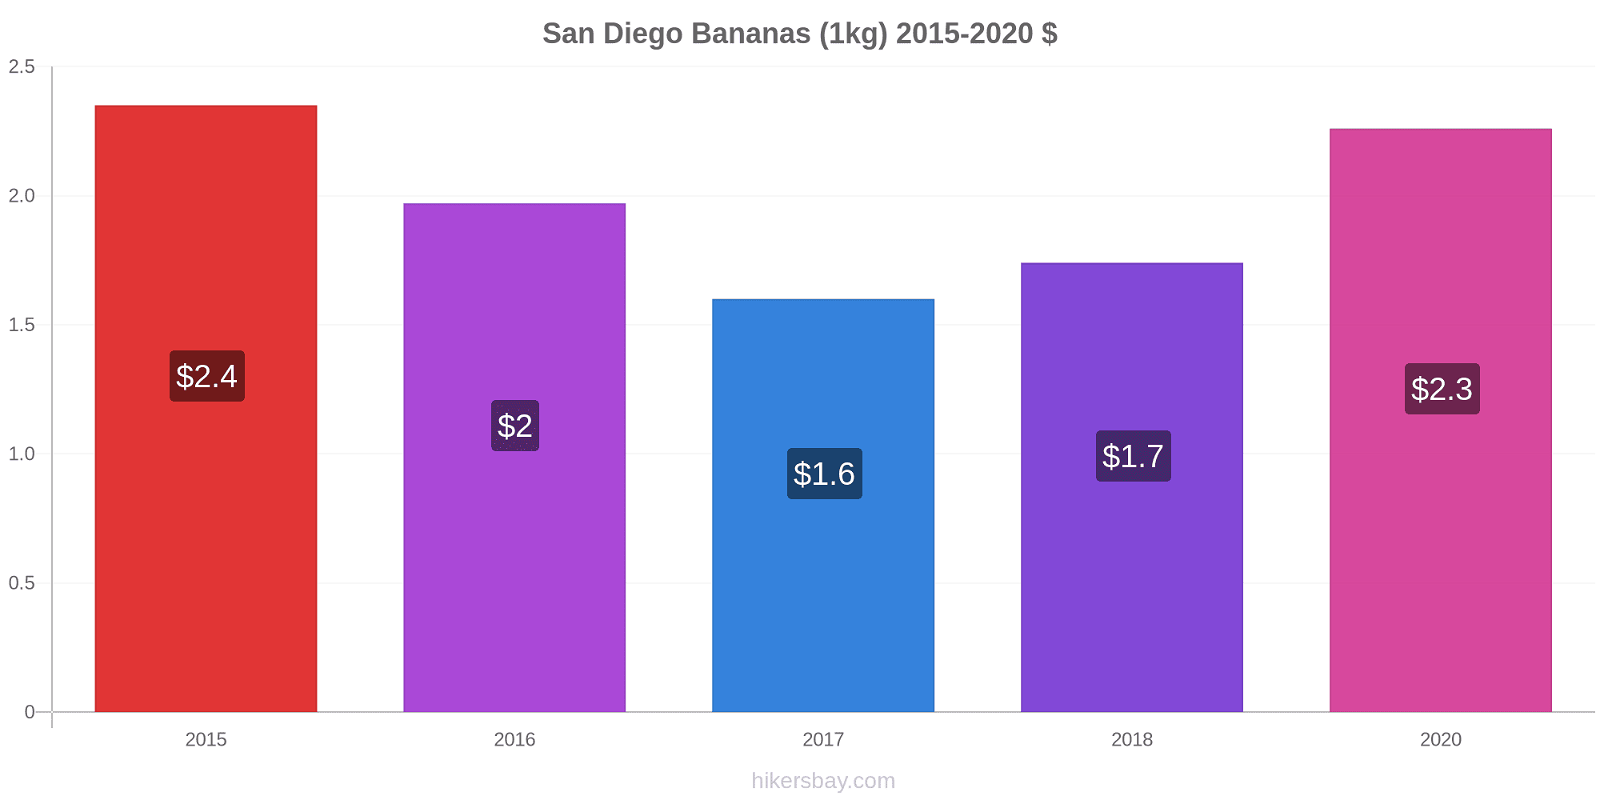 San Diego variação de preço Banana (1kg) hikersbay.com